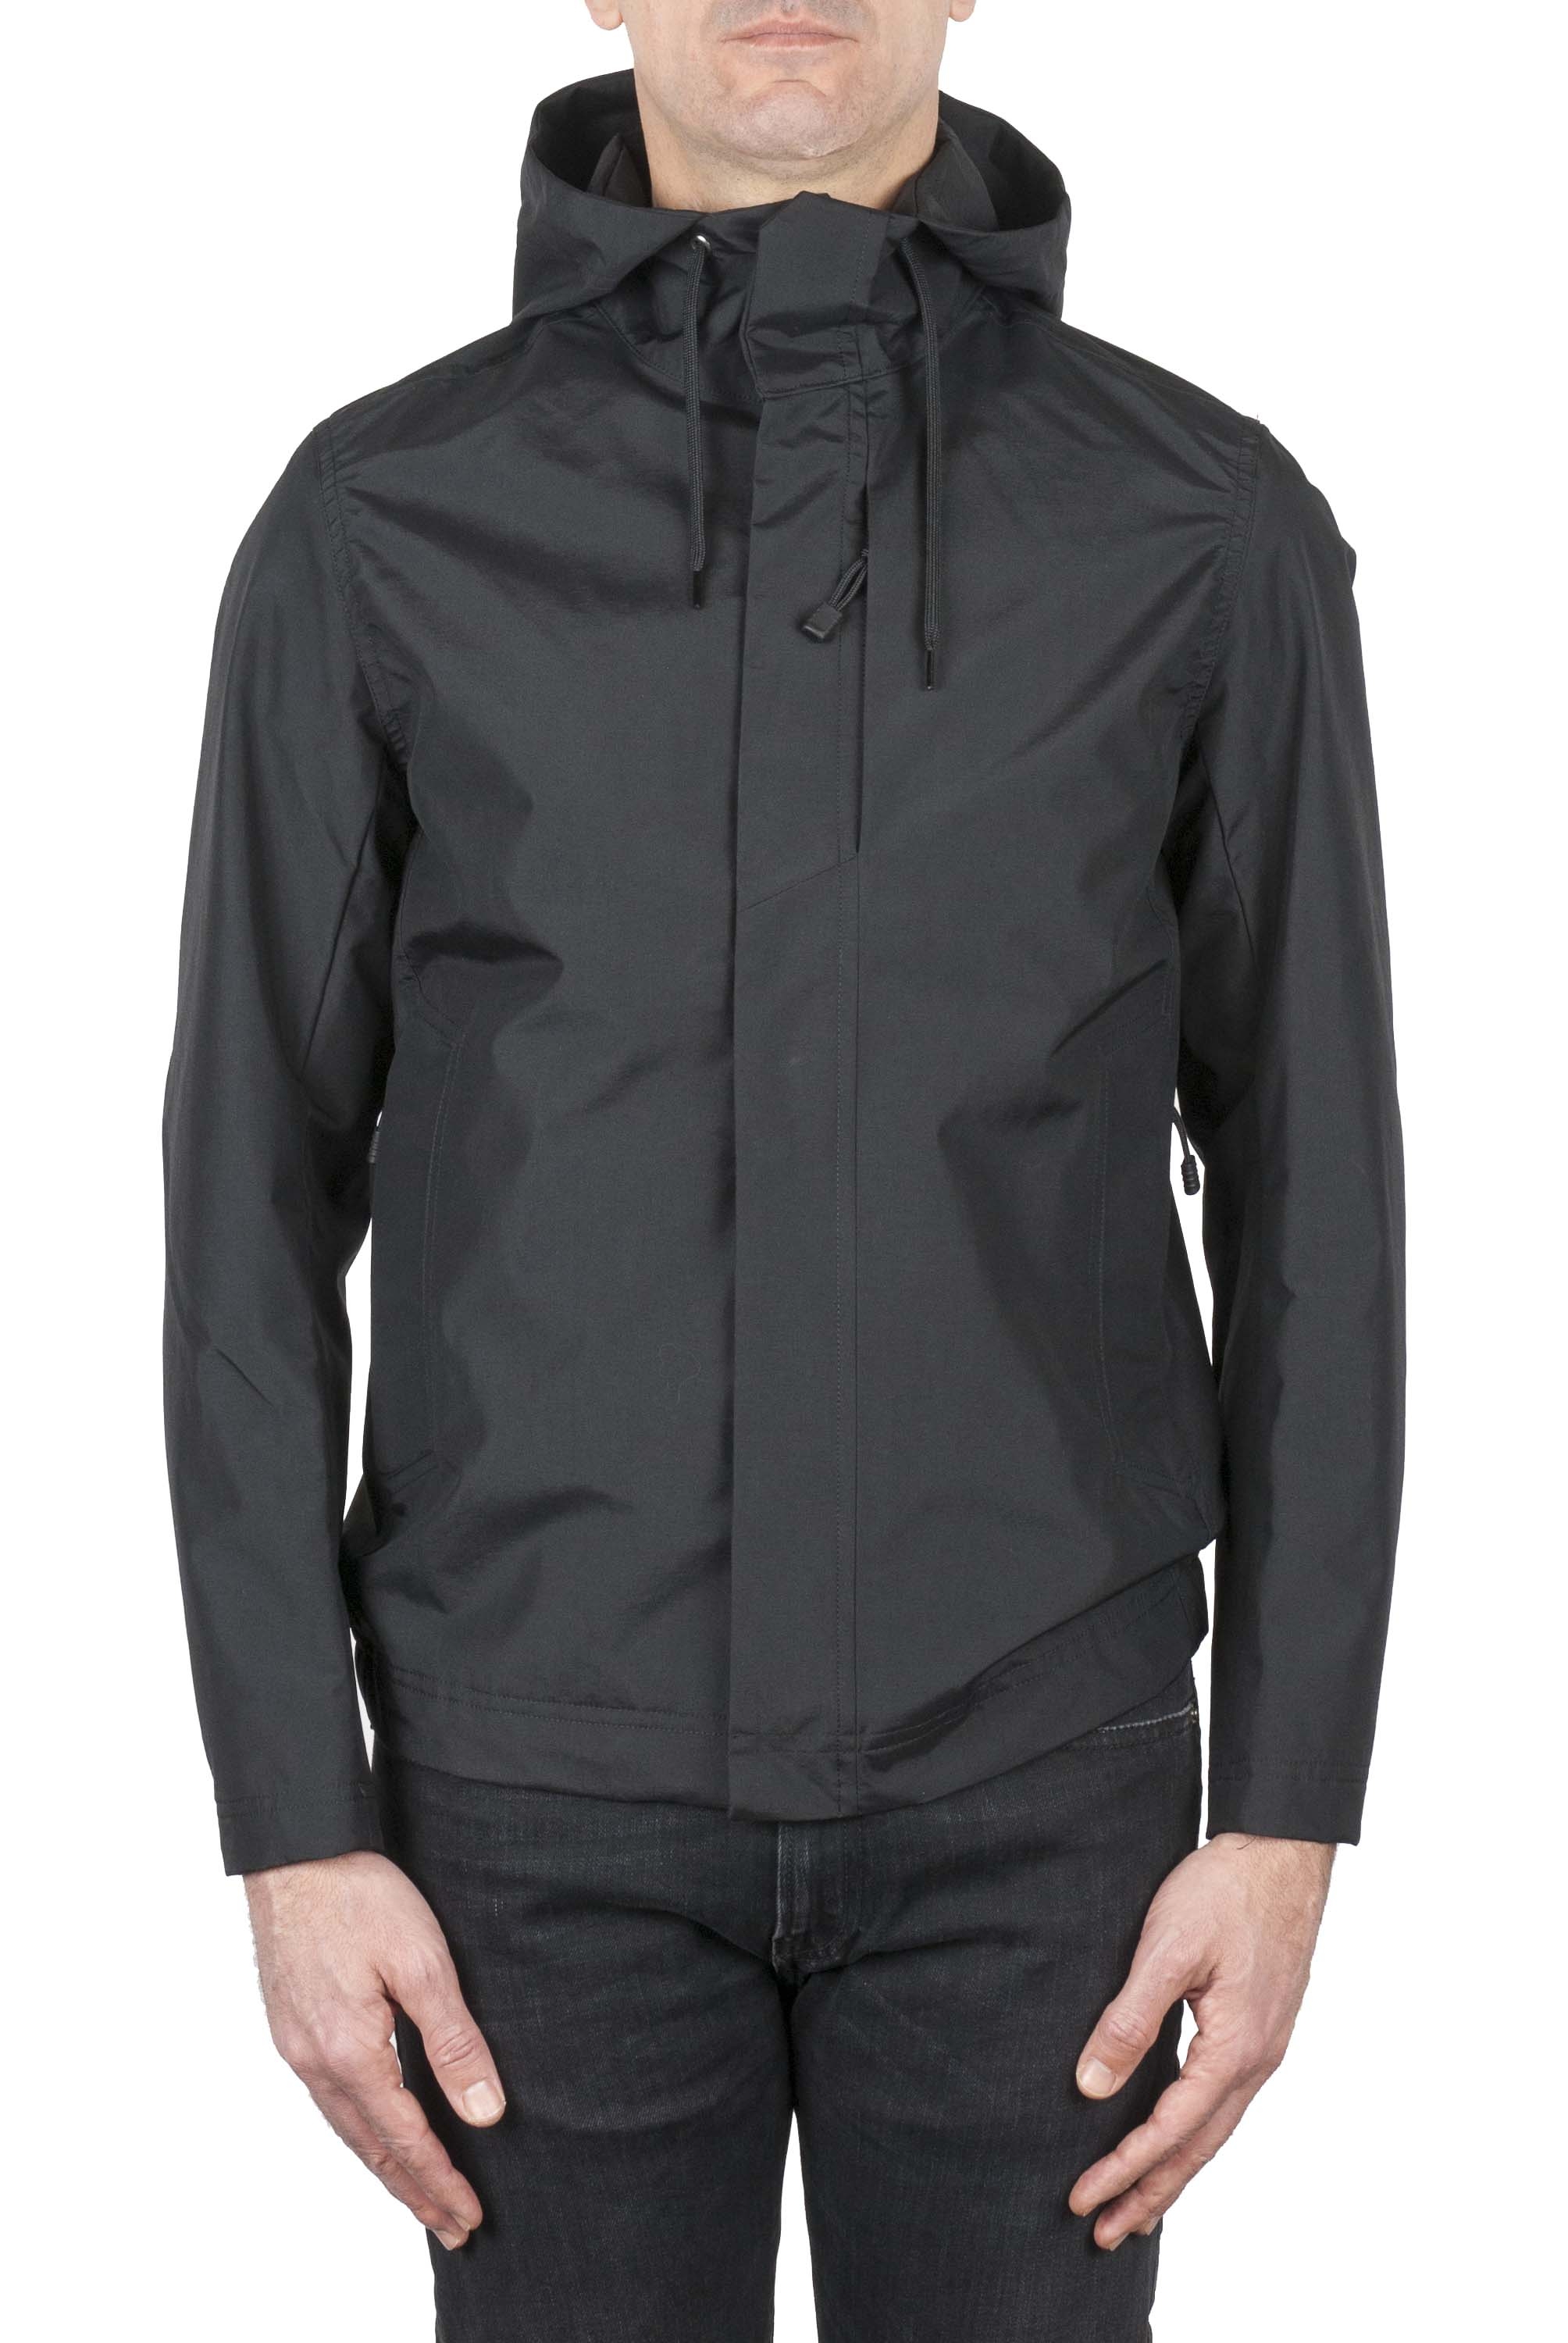 SBU 01557 Technical waterproof hooded windbreaker jacket black 01